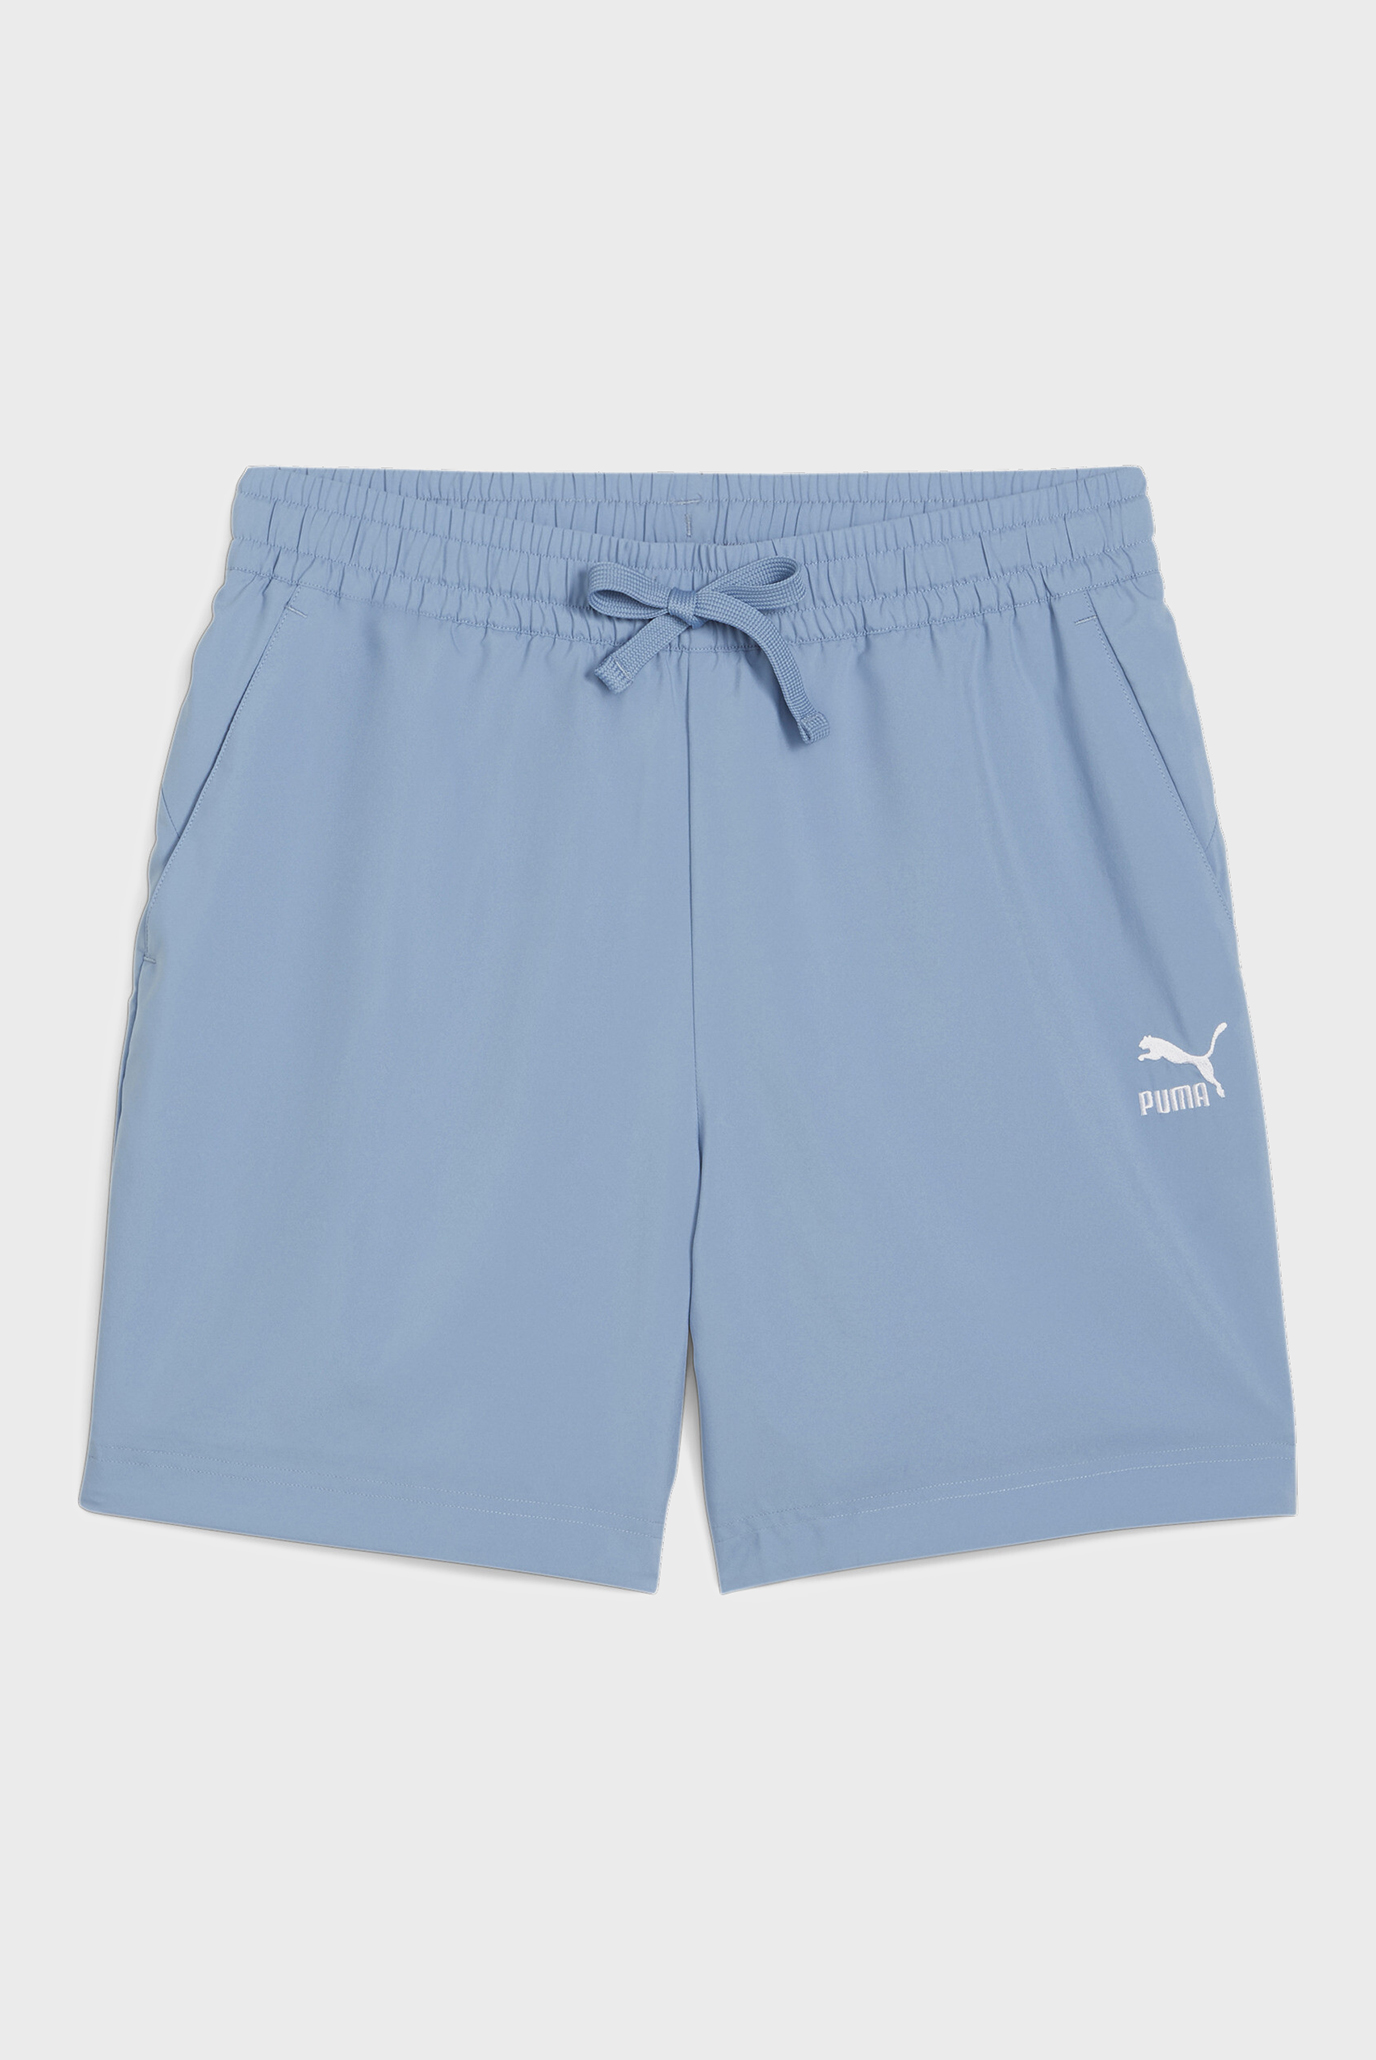 Мужские голубые шорты CLASSICS Men's Shorts 1